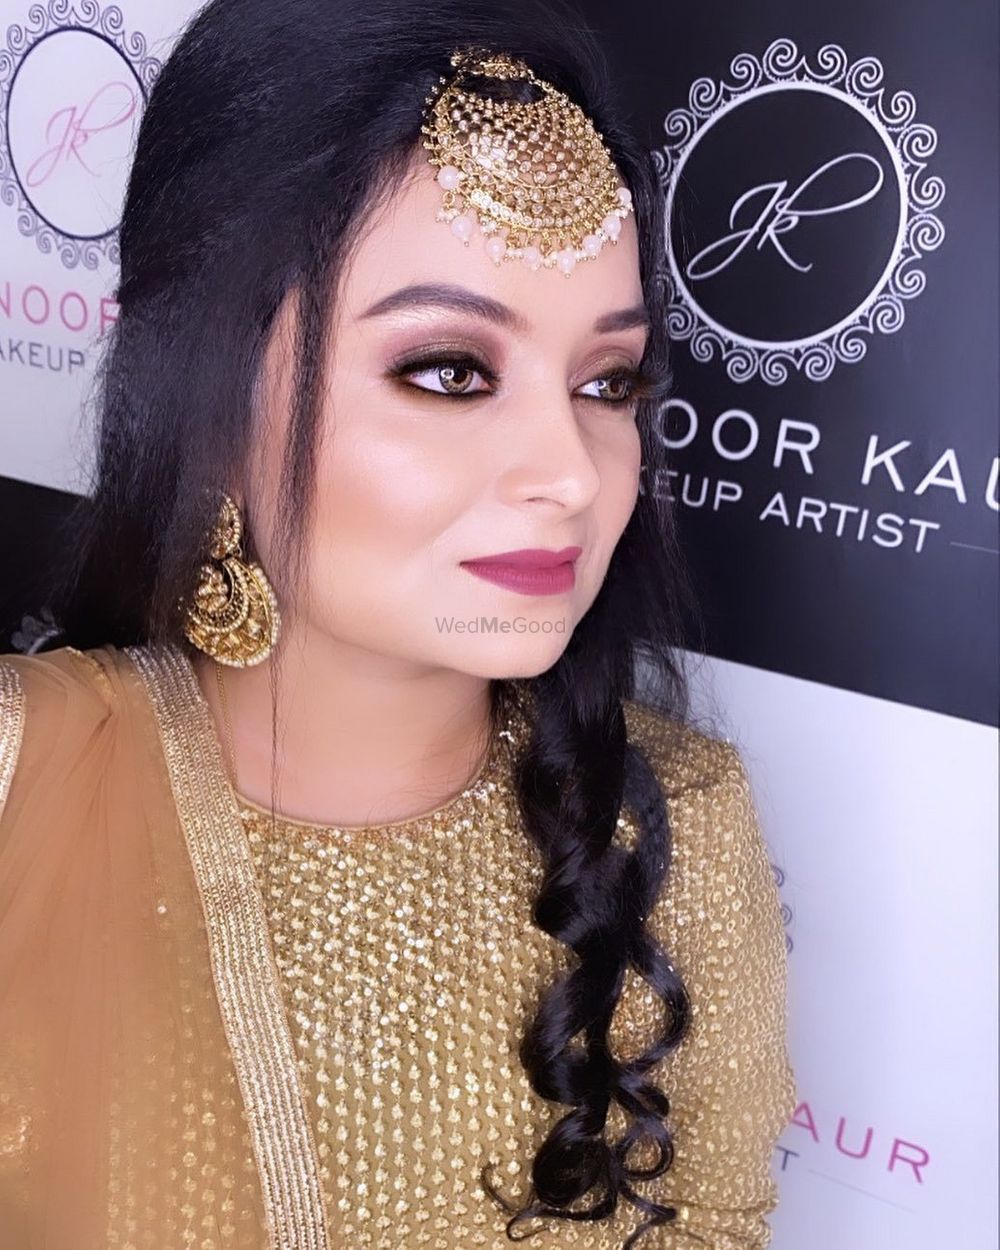 Photo By Japnoor Kaur Makeup Artist - Bridal Makeup